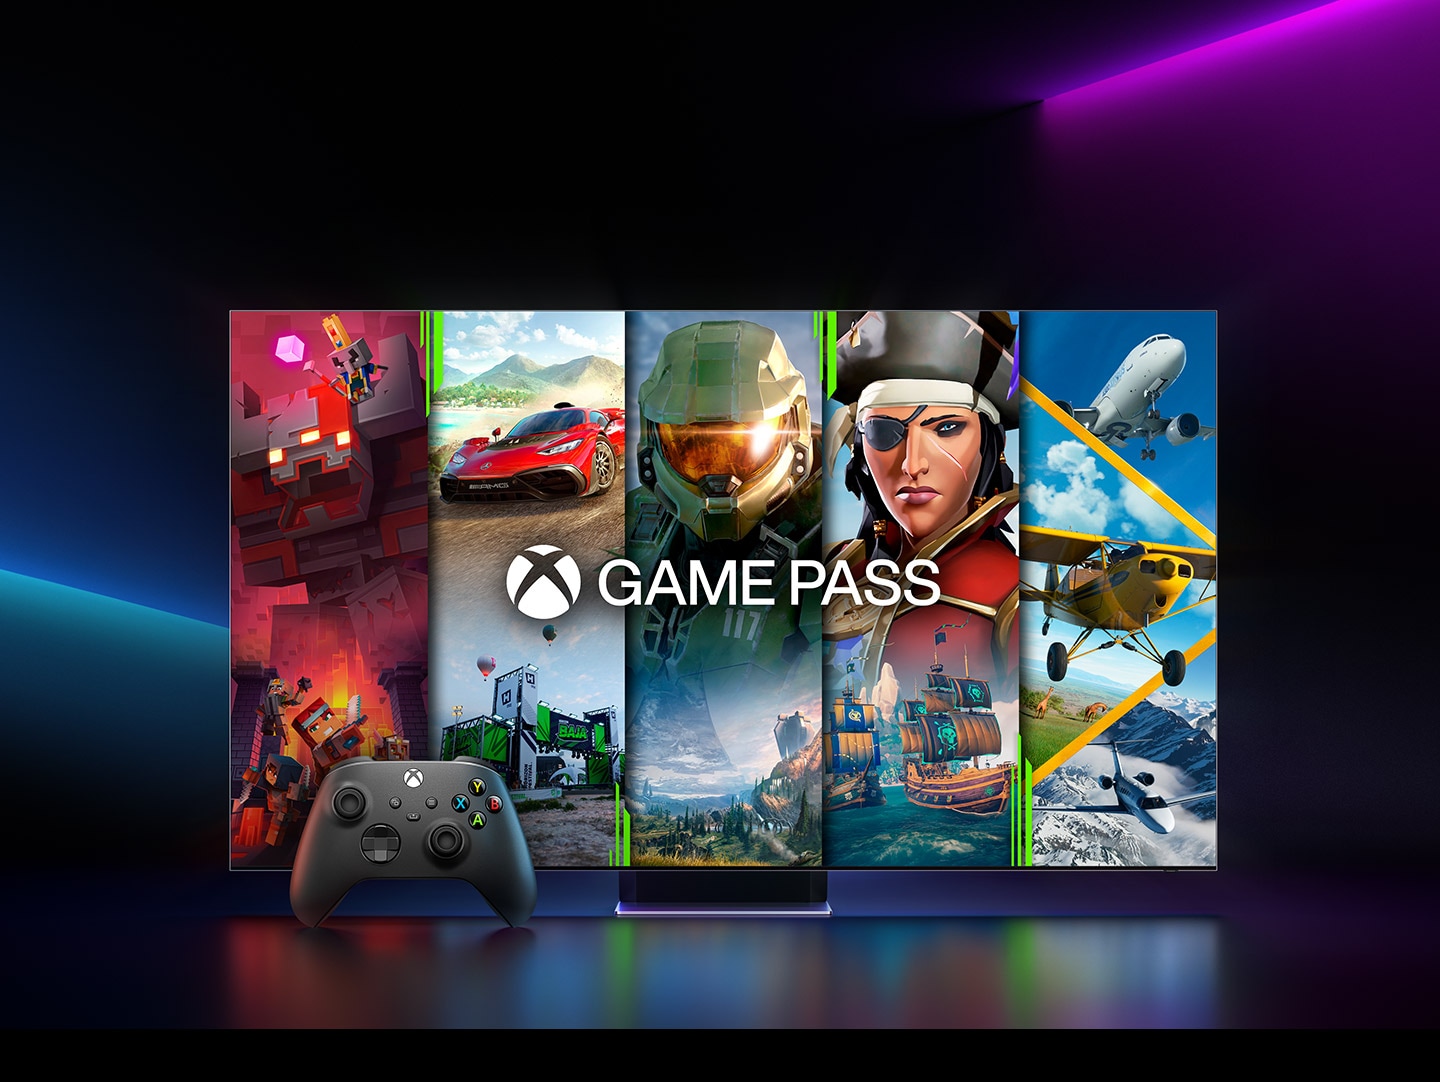 Screenshots von 5 verschiedenen Xbox-Spielen werden auf einmal angezeigt. Das Xbox Game Pass-Logo und ein Spiel-Controller sind zu sehen.